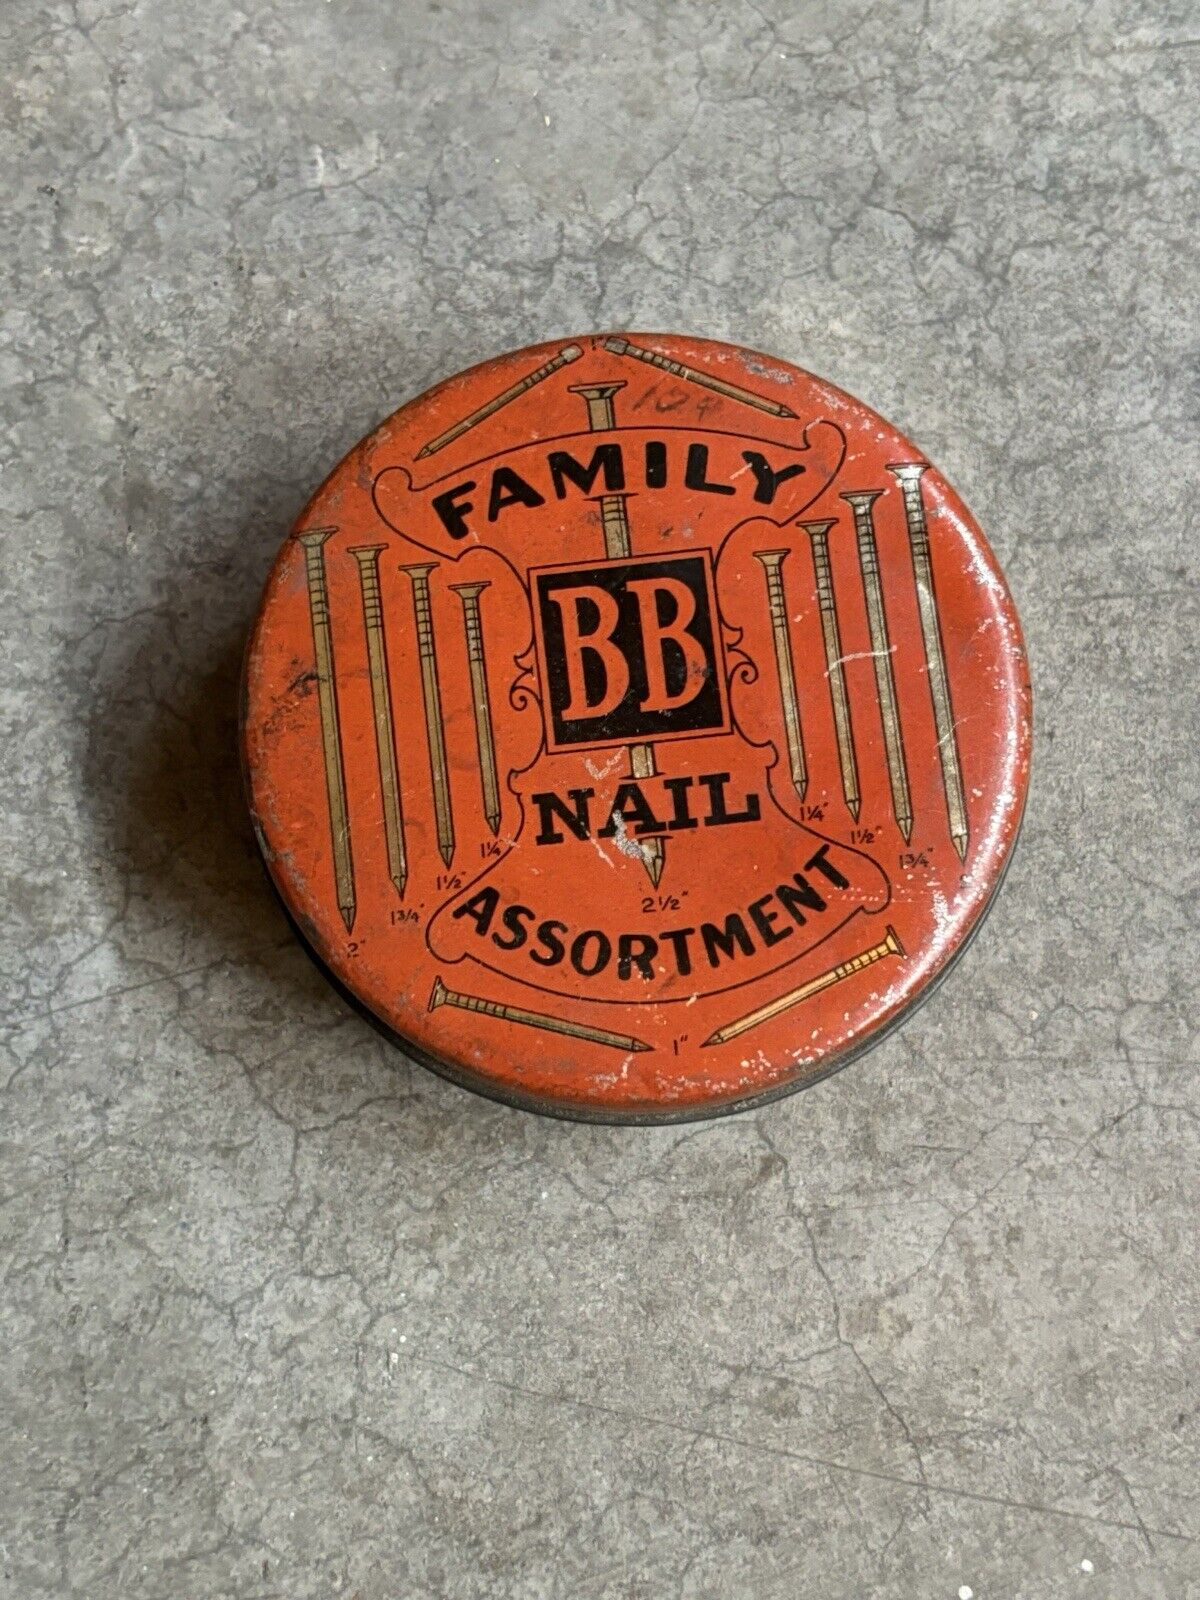 Nail Tin Orange Container Storage Vintage Advertising Fastener Shop Tool Box